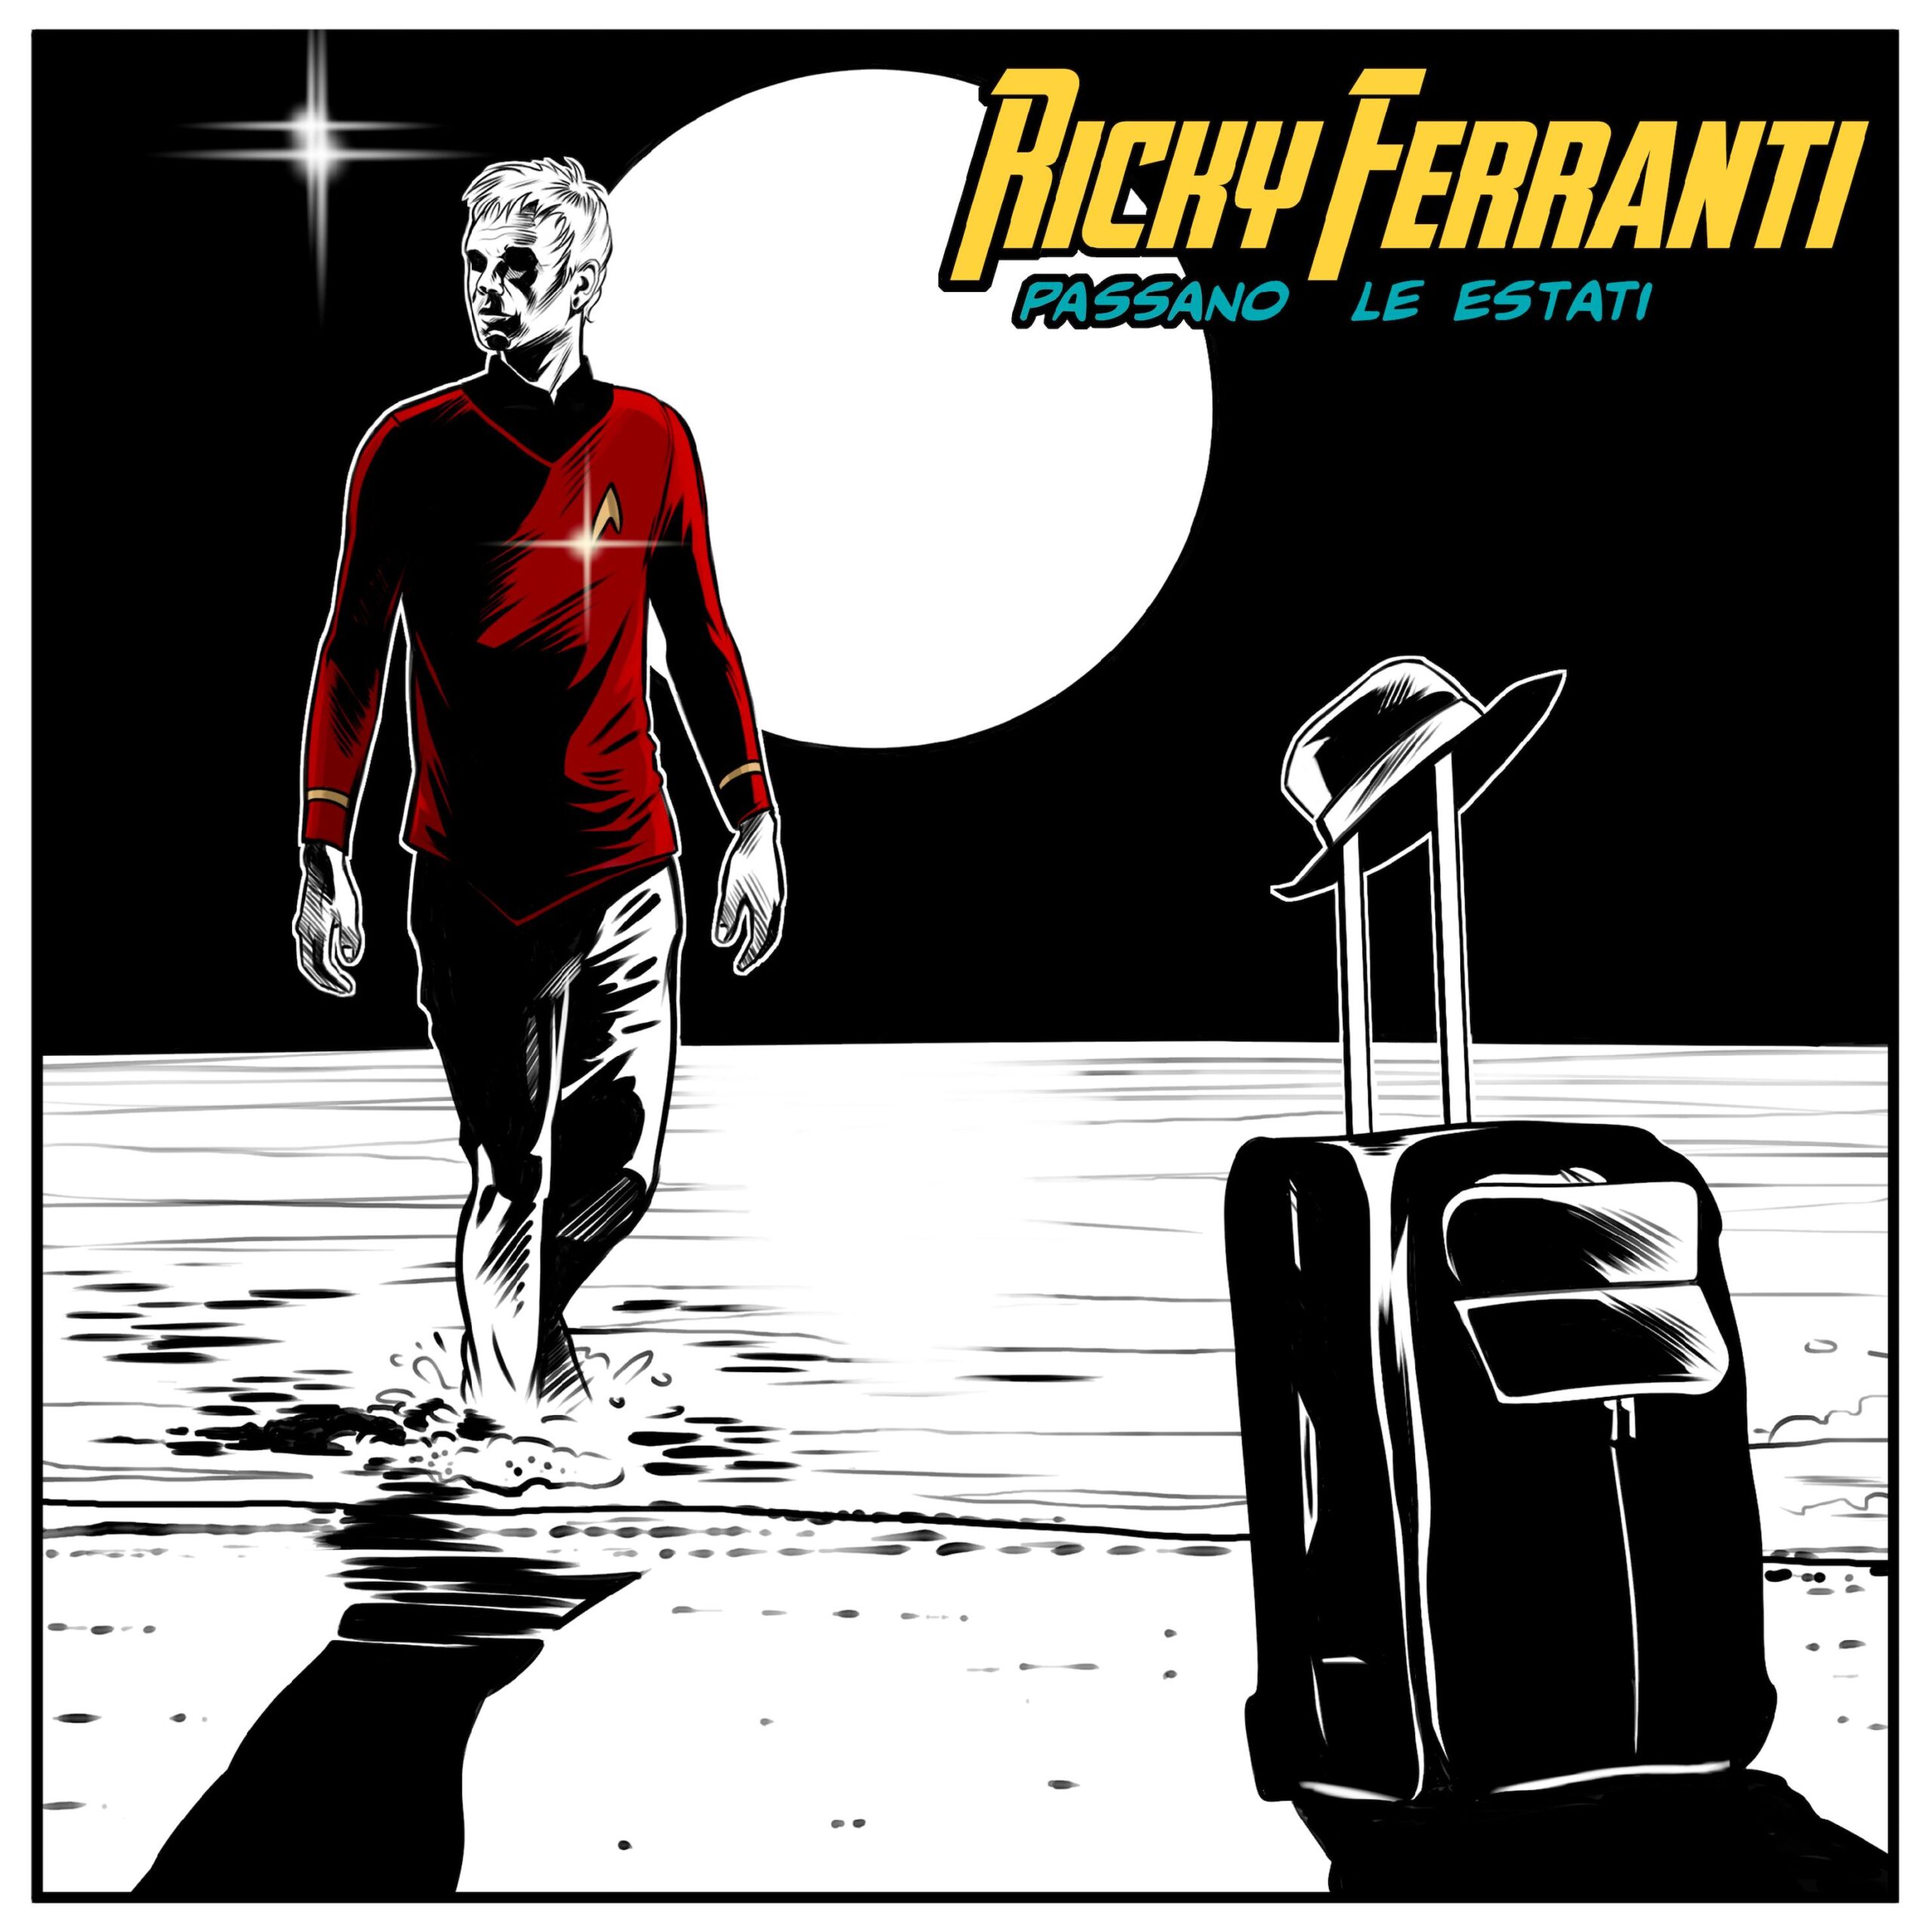 Passano le estati è il nuovo singolo di Ricky Ferranti